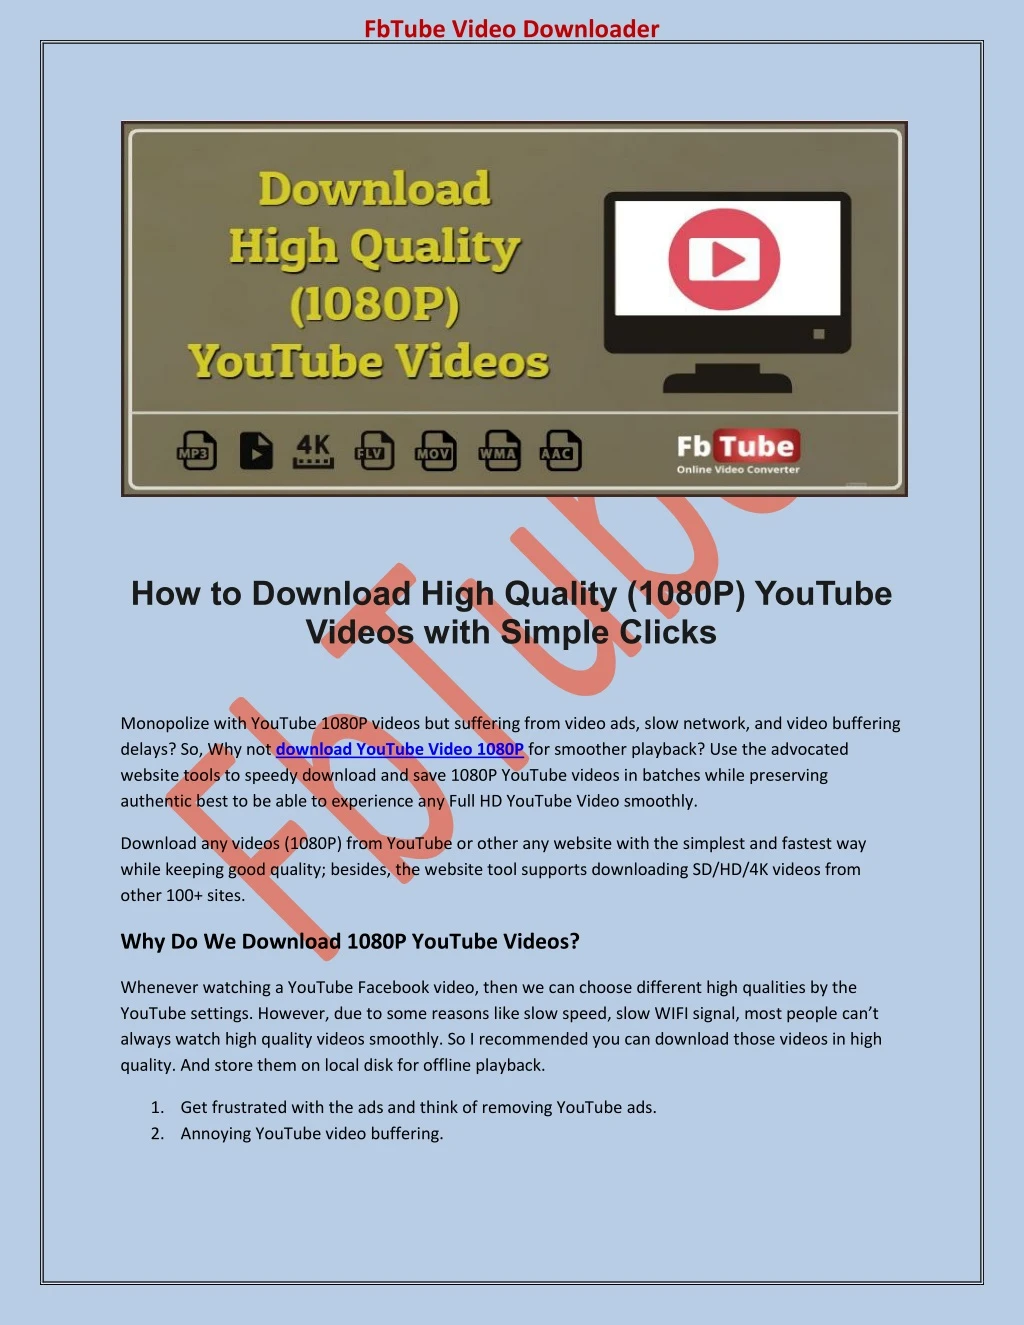 fbtube video downloader